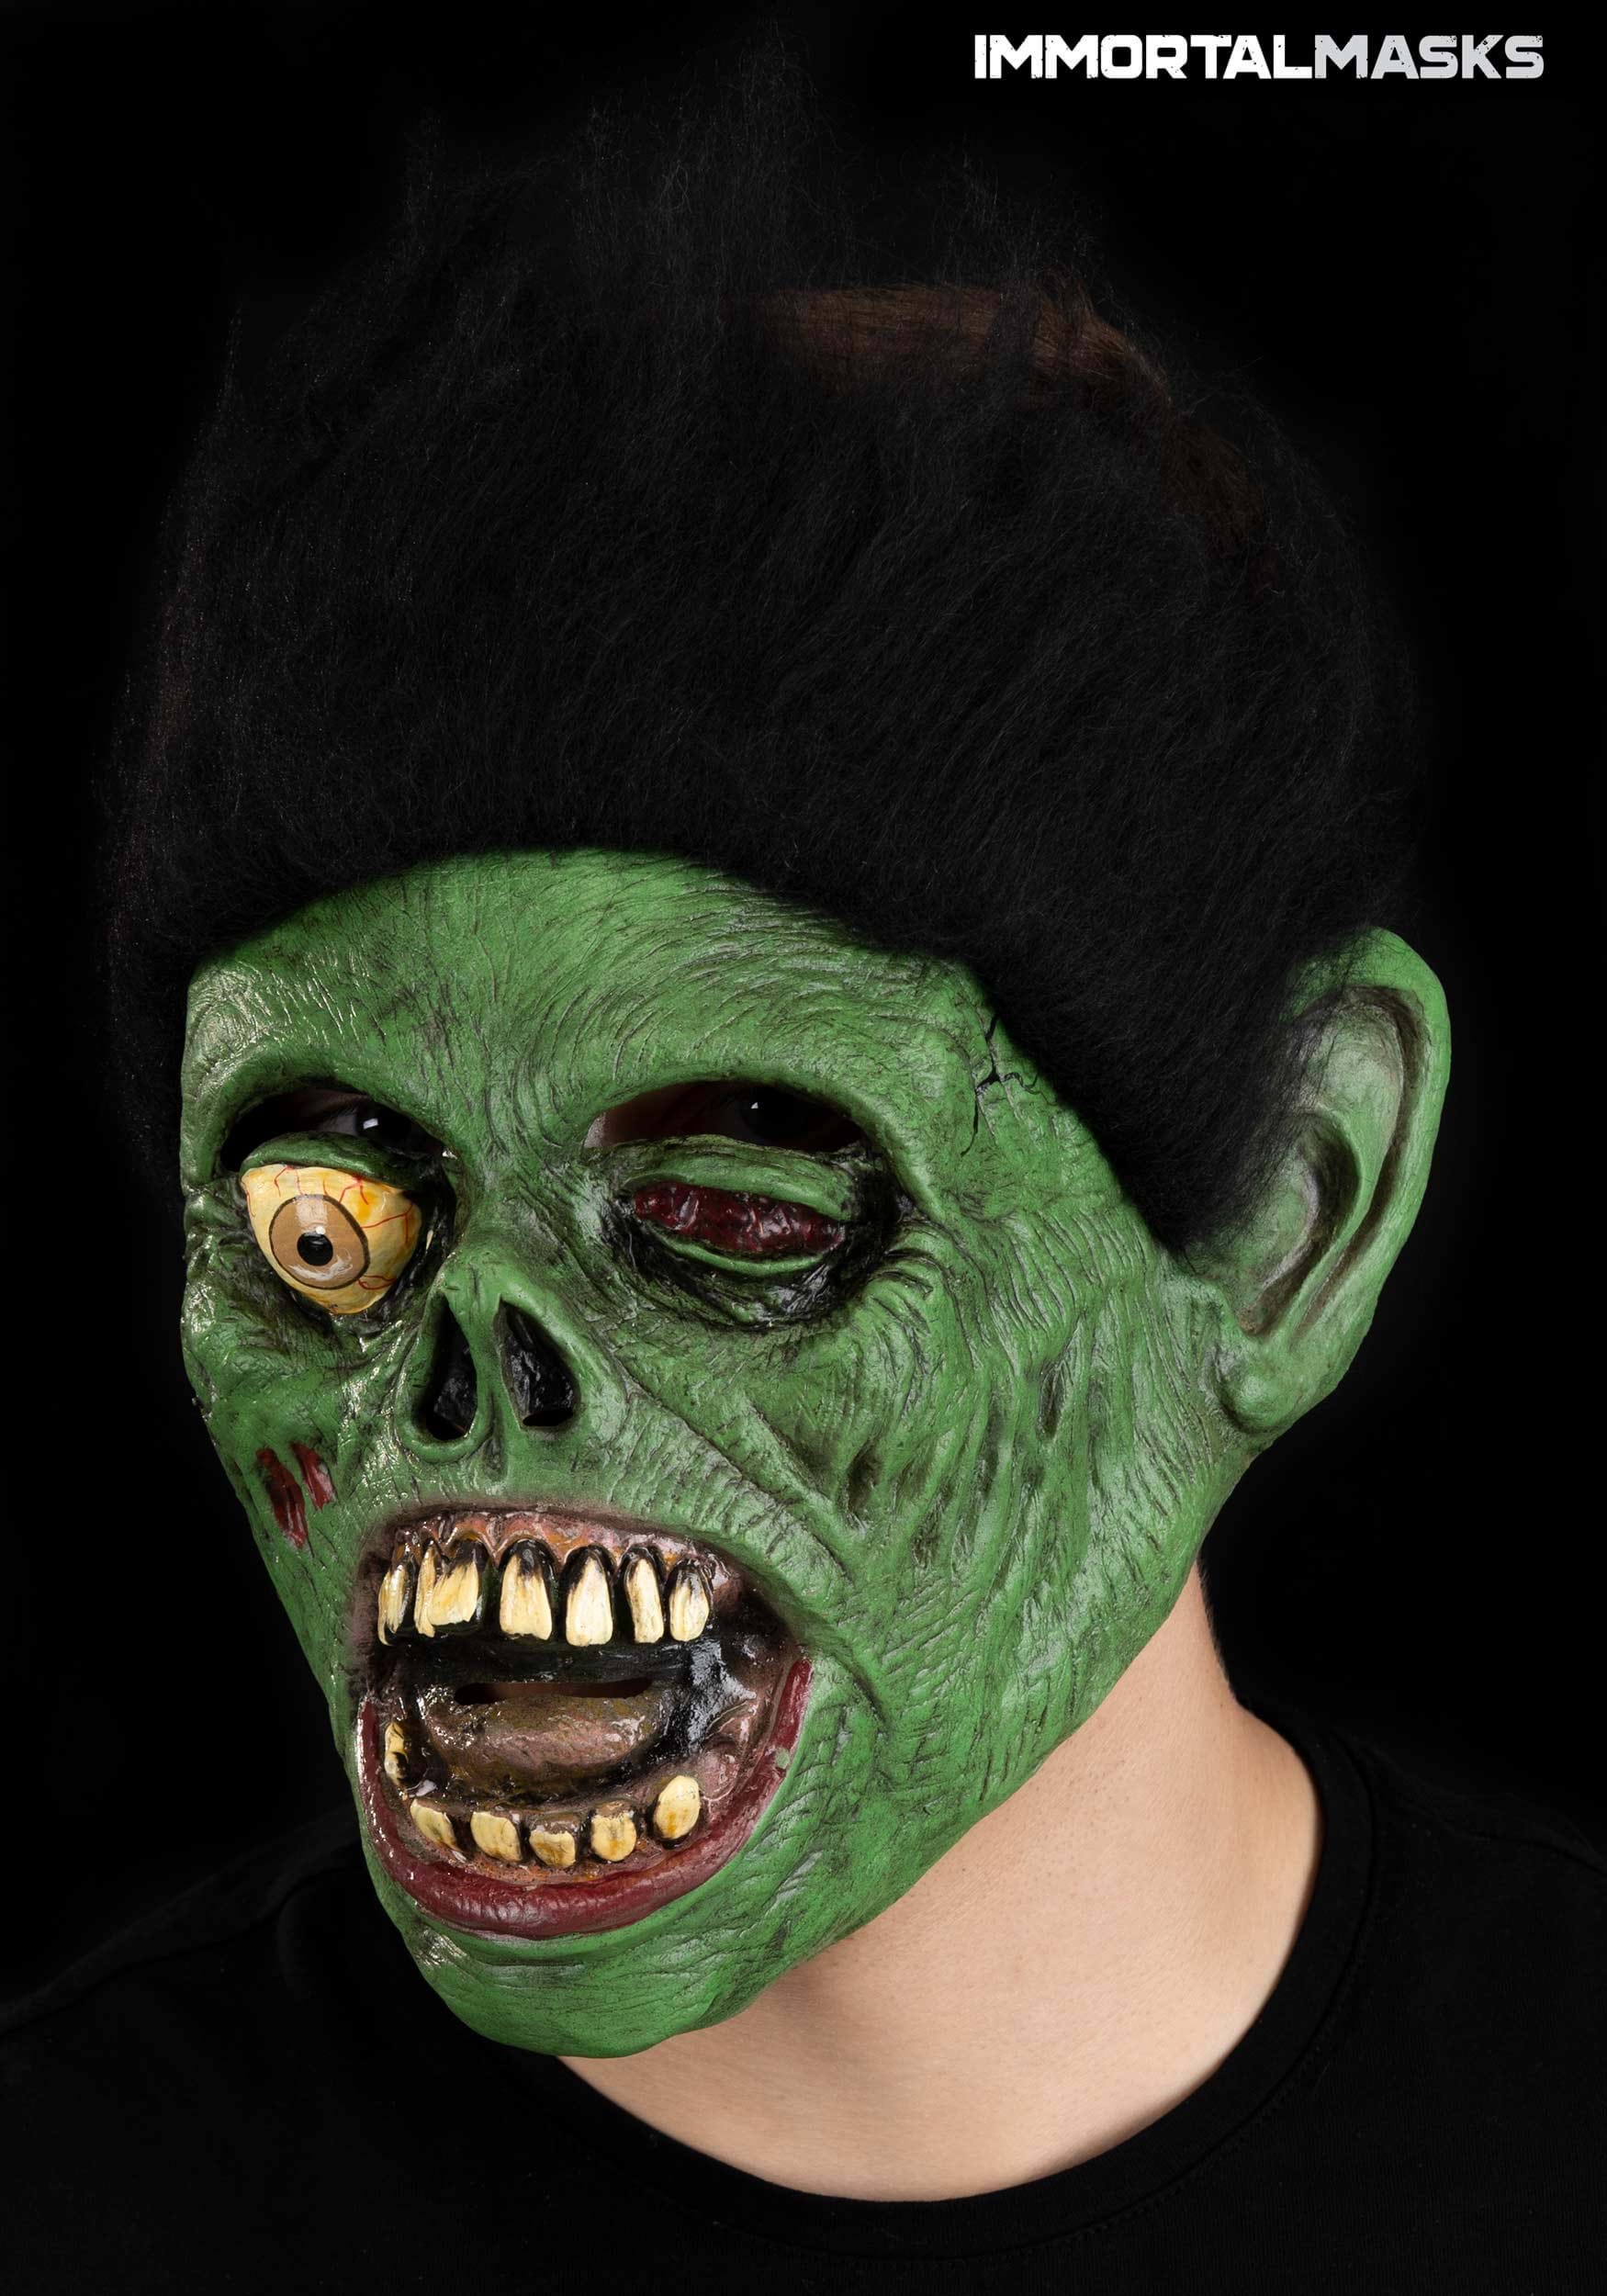 Green Monster Full Face Mask